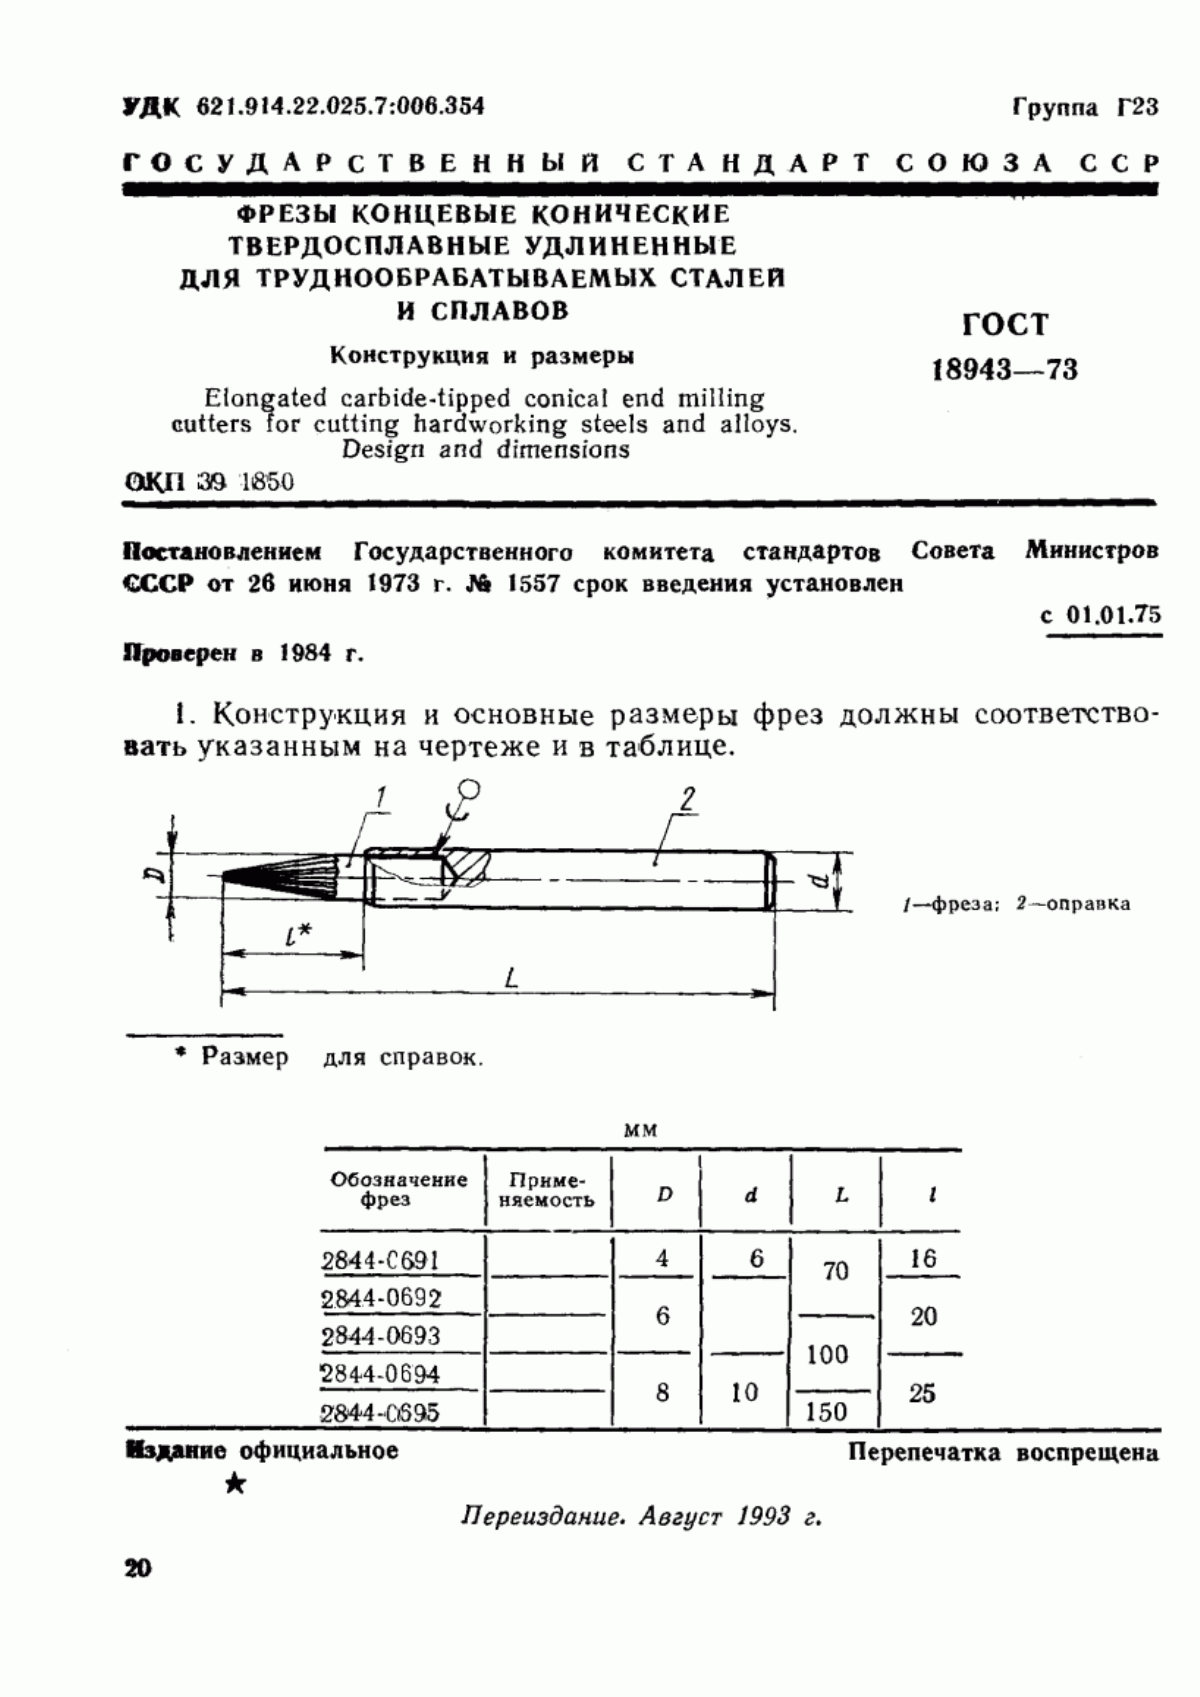 ГОСТ 18943-73 Фрезы концевые конические твердосплавные удлиненные для труднообрабатываемых сталей и сплавов. Конструкция и размеры